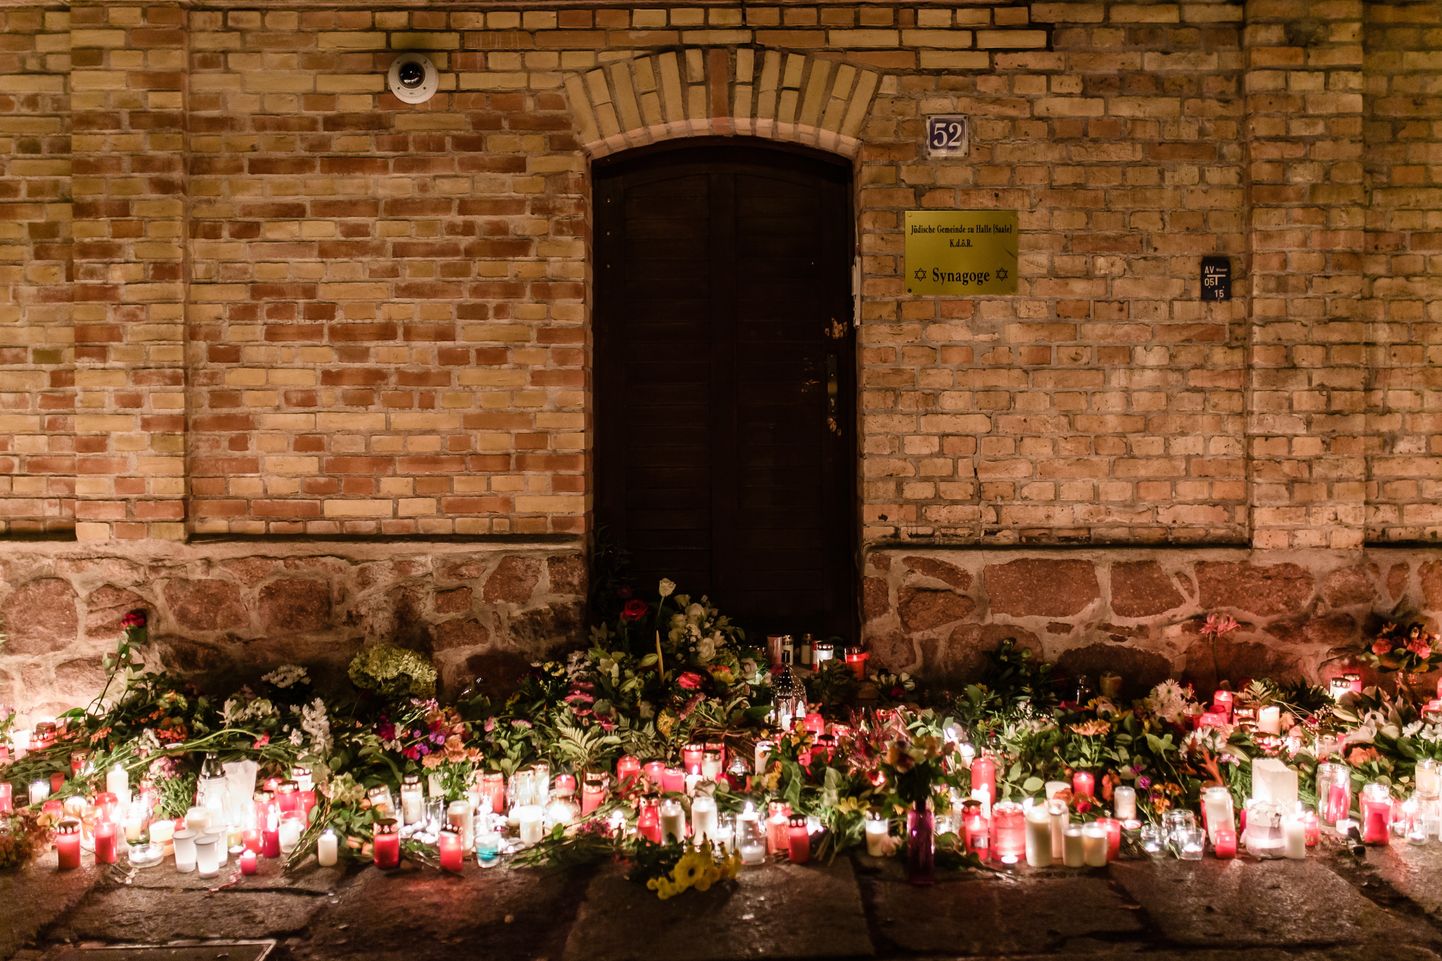 Halles iedzīvotāji pie sinagogas nolikuši ziedus un svecītes apšaudē nogalināto cilvēku piemiņai.